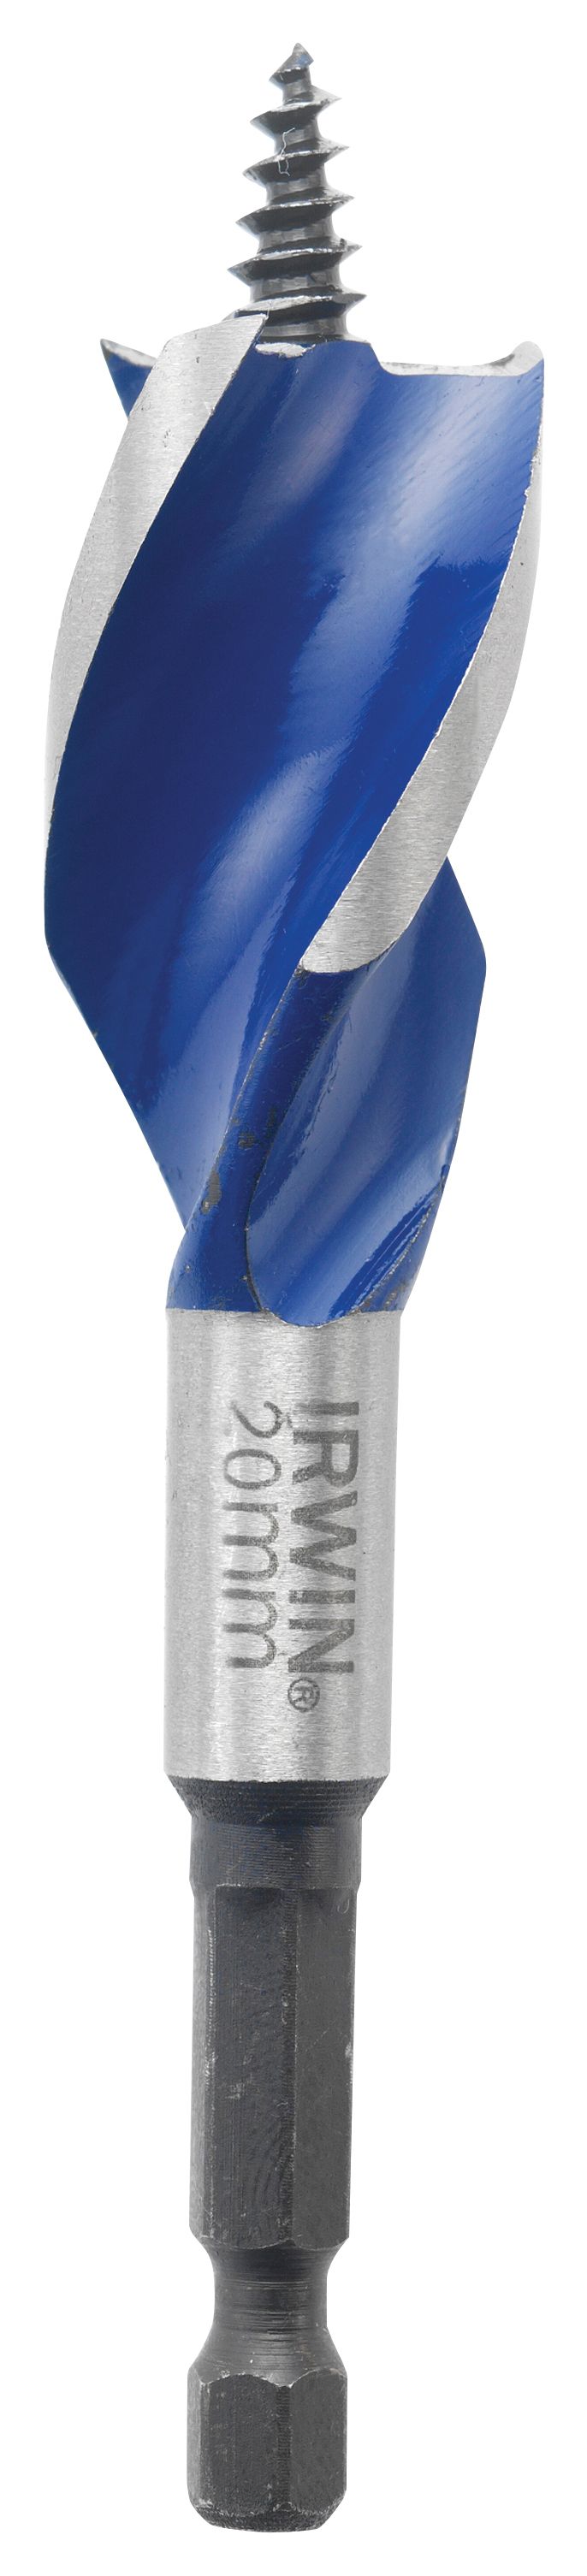 Irwin 10506624 Ir x 6 Blue Groove Speedbor Wood Bit - 159 x 25mm